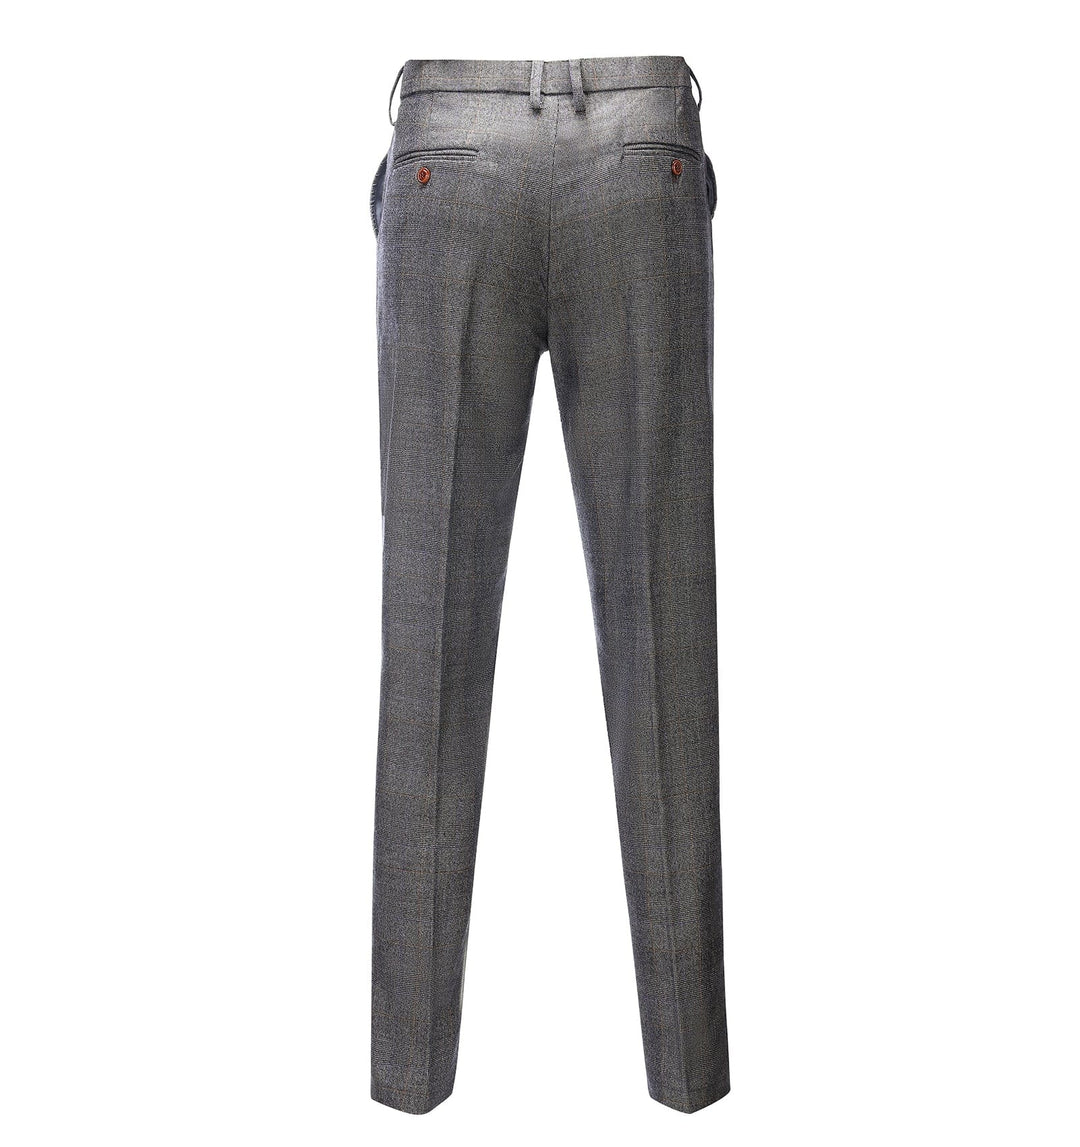 Casual Men's Suit Pant Grey Plaid Pleat-Front Trousers menseventwear